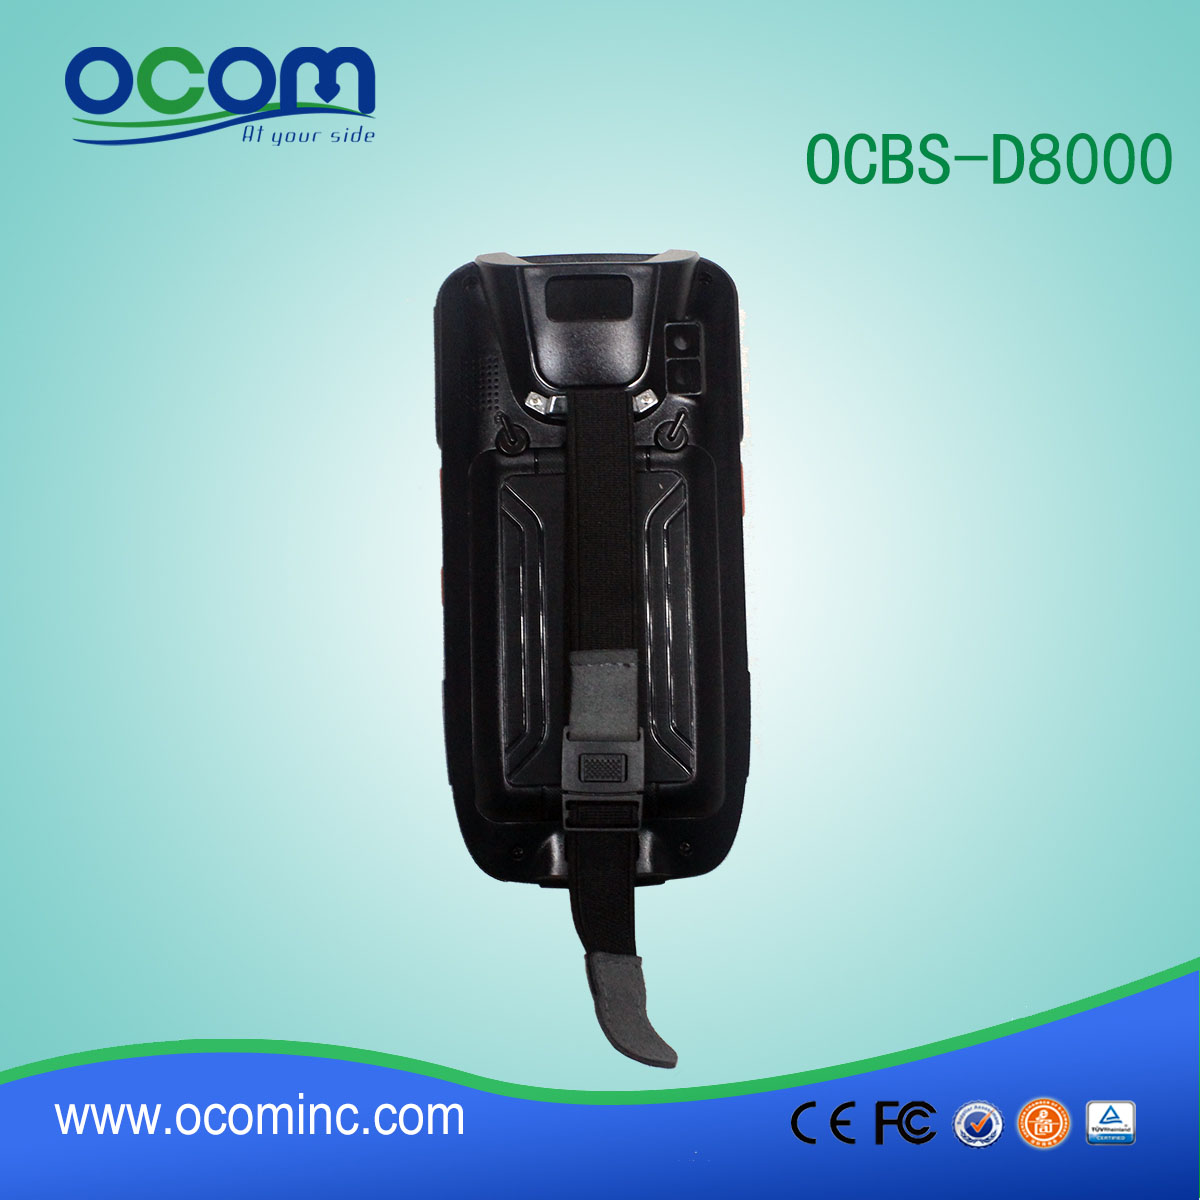 OCBS-D8000 pda androide escáner láser de código de barras